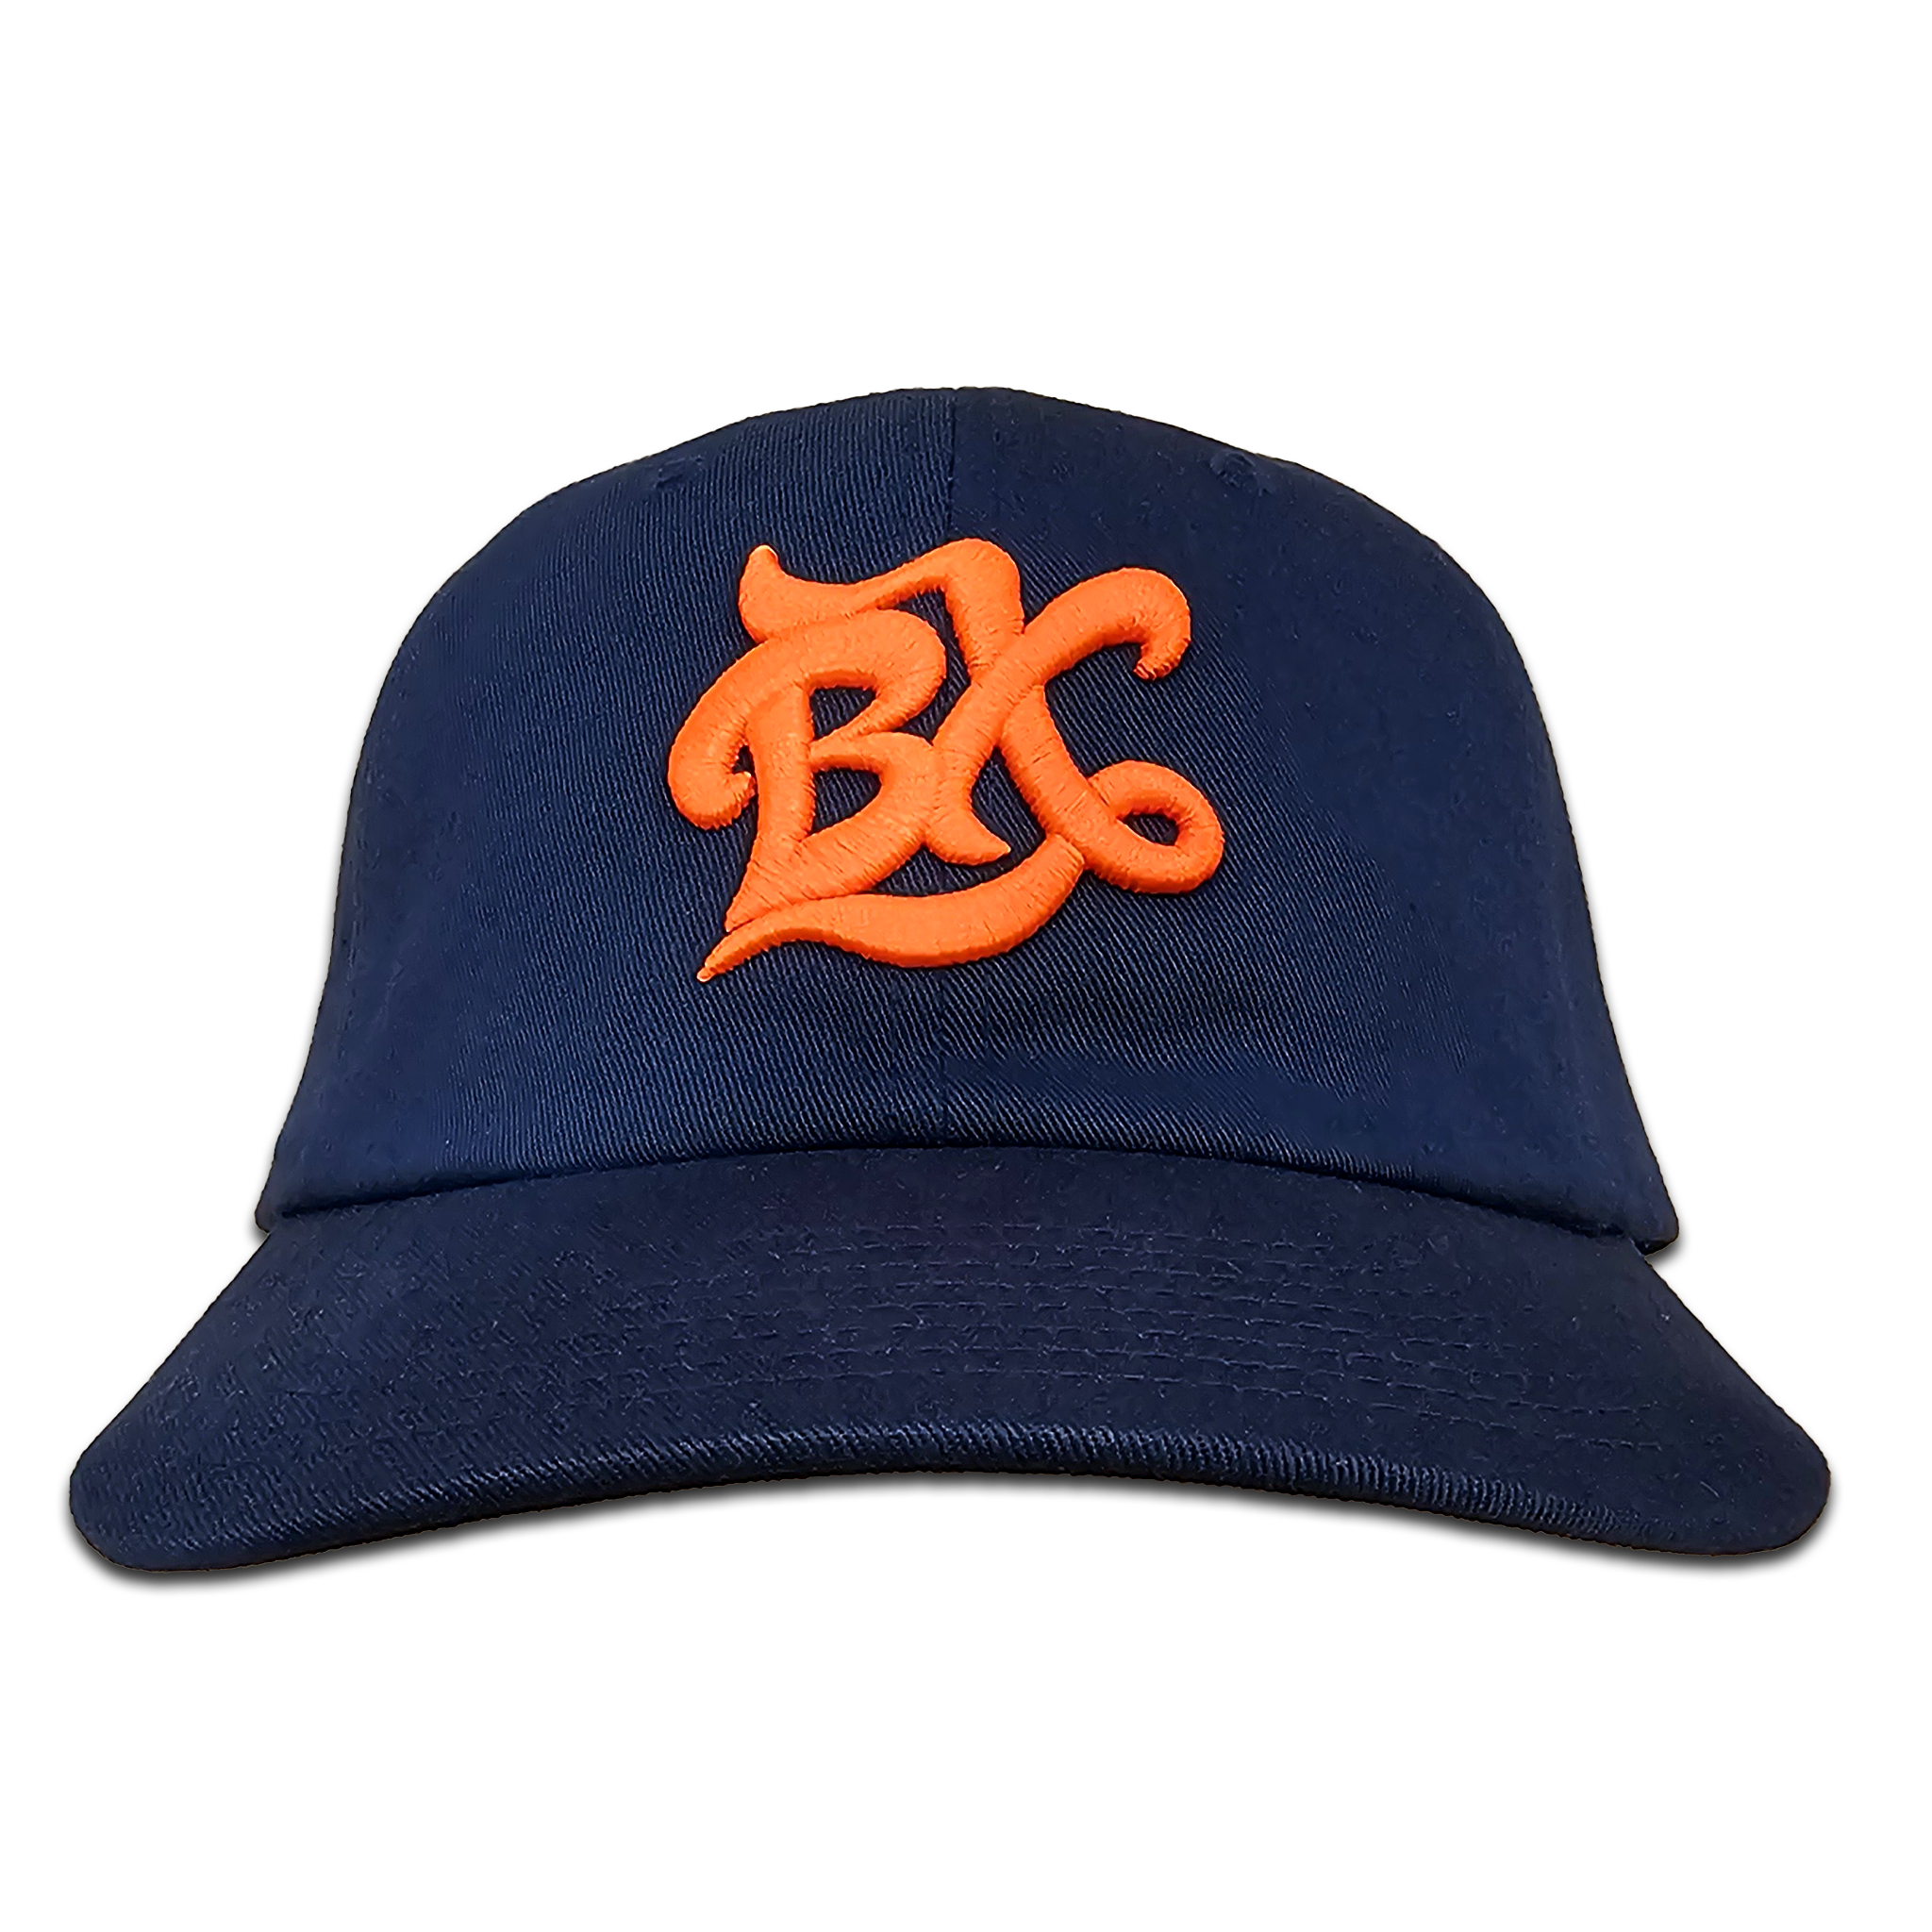 BX Wave Dad Hat in Navy/Orange Front